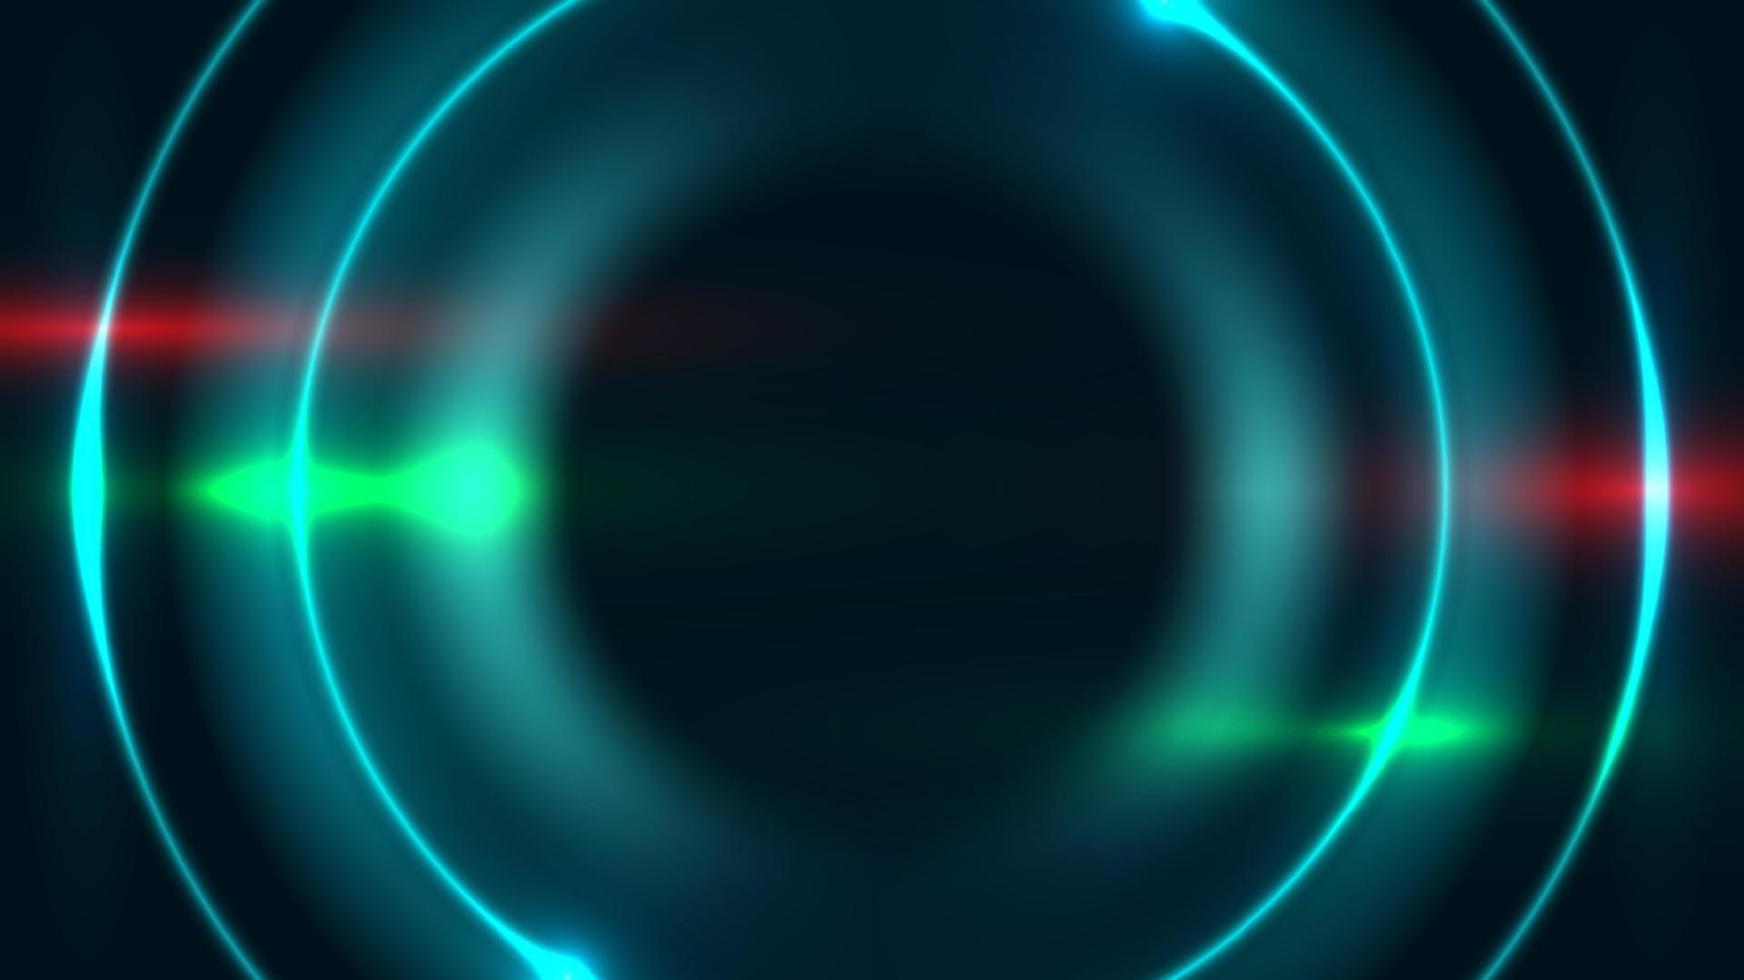 quadro de círculos de luz neon azul abstrato com efeito de iluminação no conceito de tecnologia de fundo escuro vetor